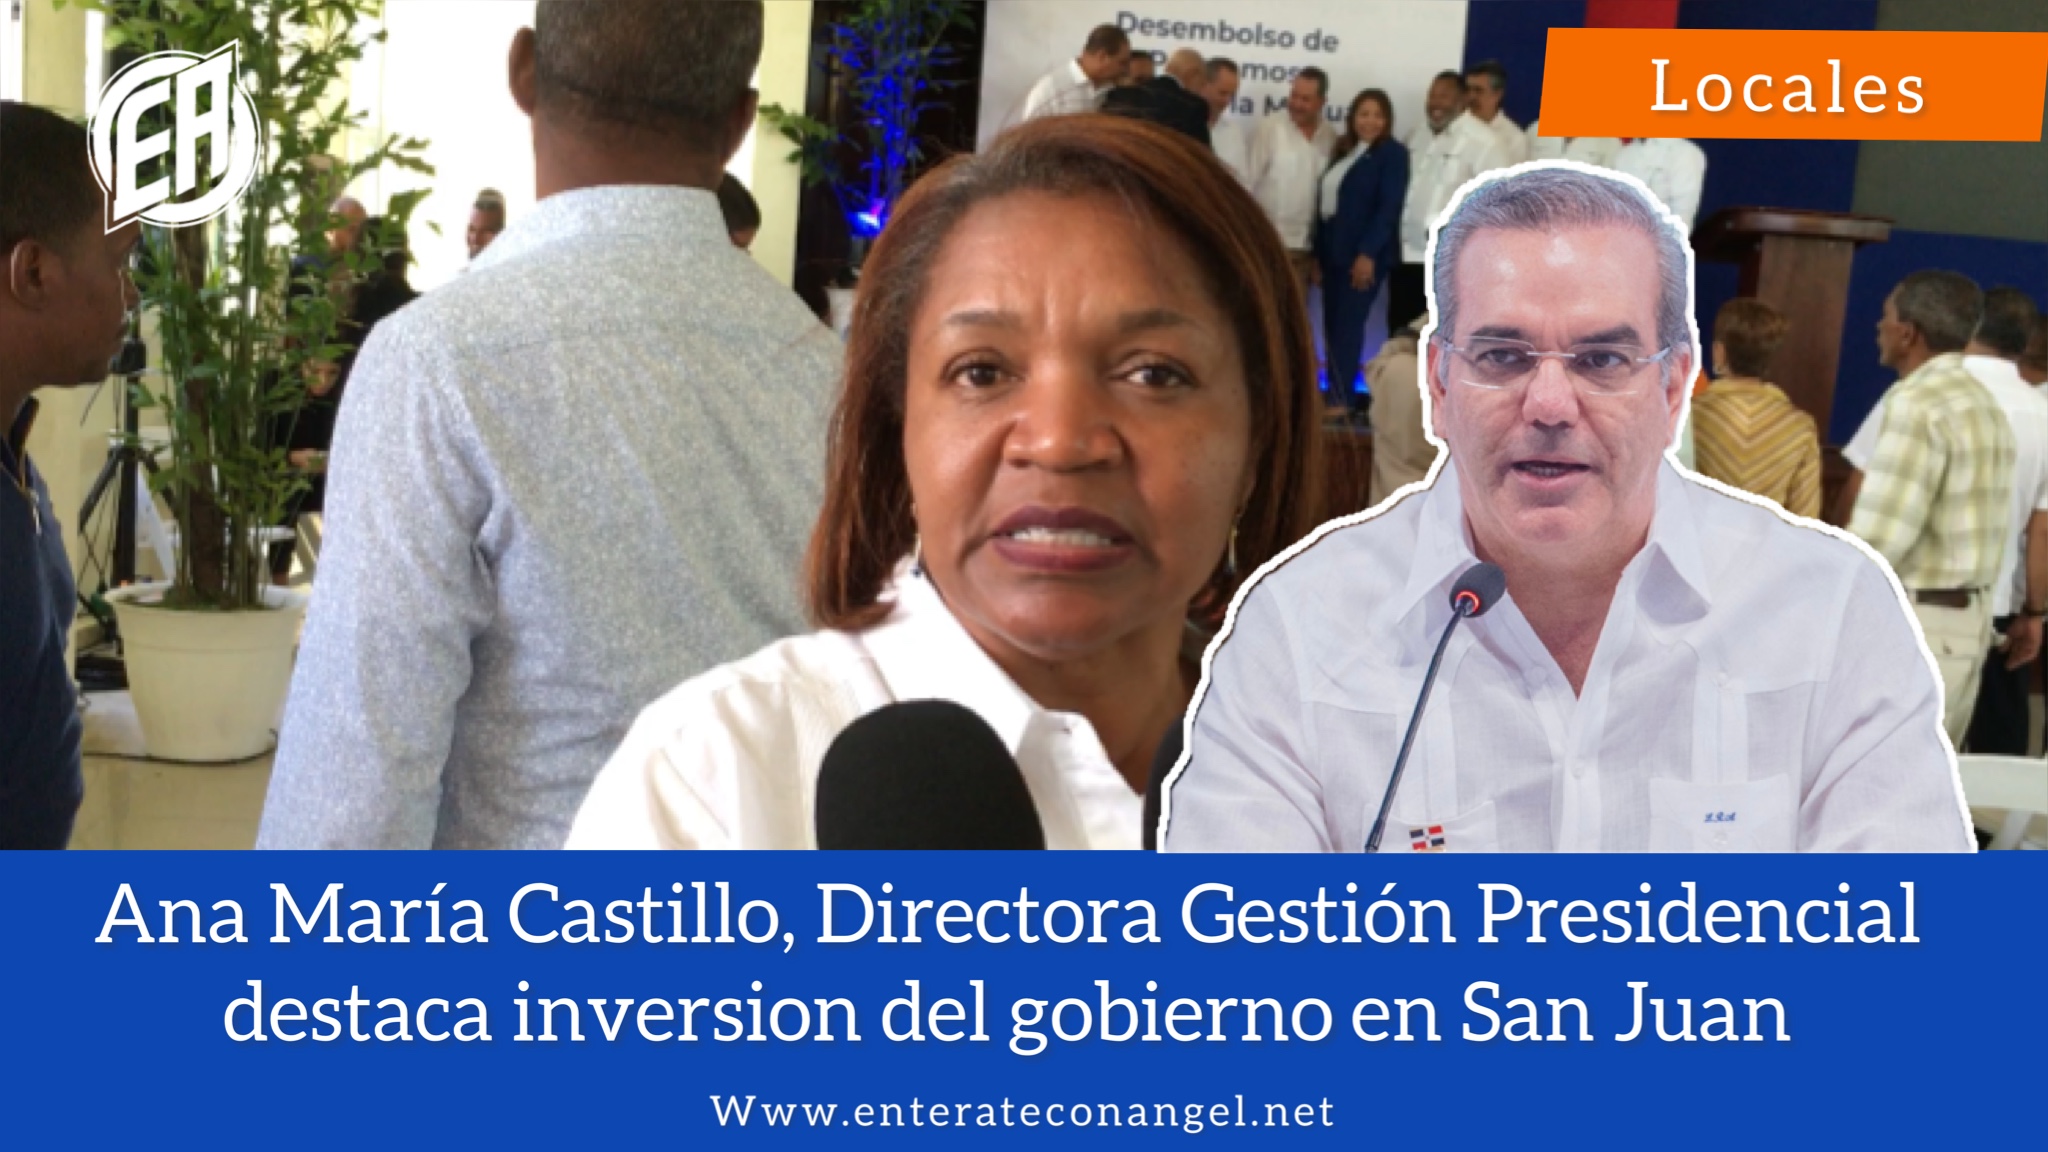 Ana María Castillo, Directora de Gestión Presidencial destaca inversiones del gobierno en San Juan